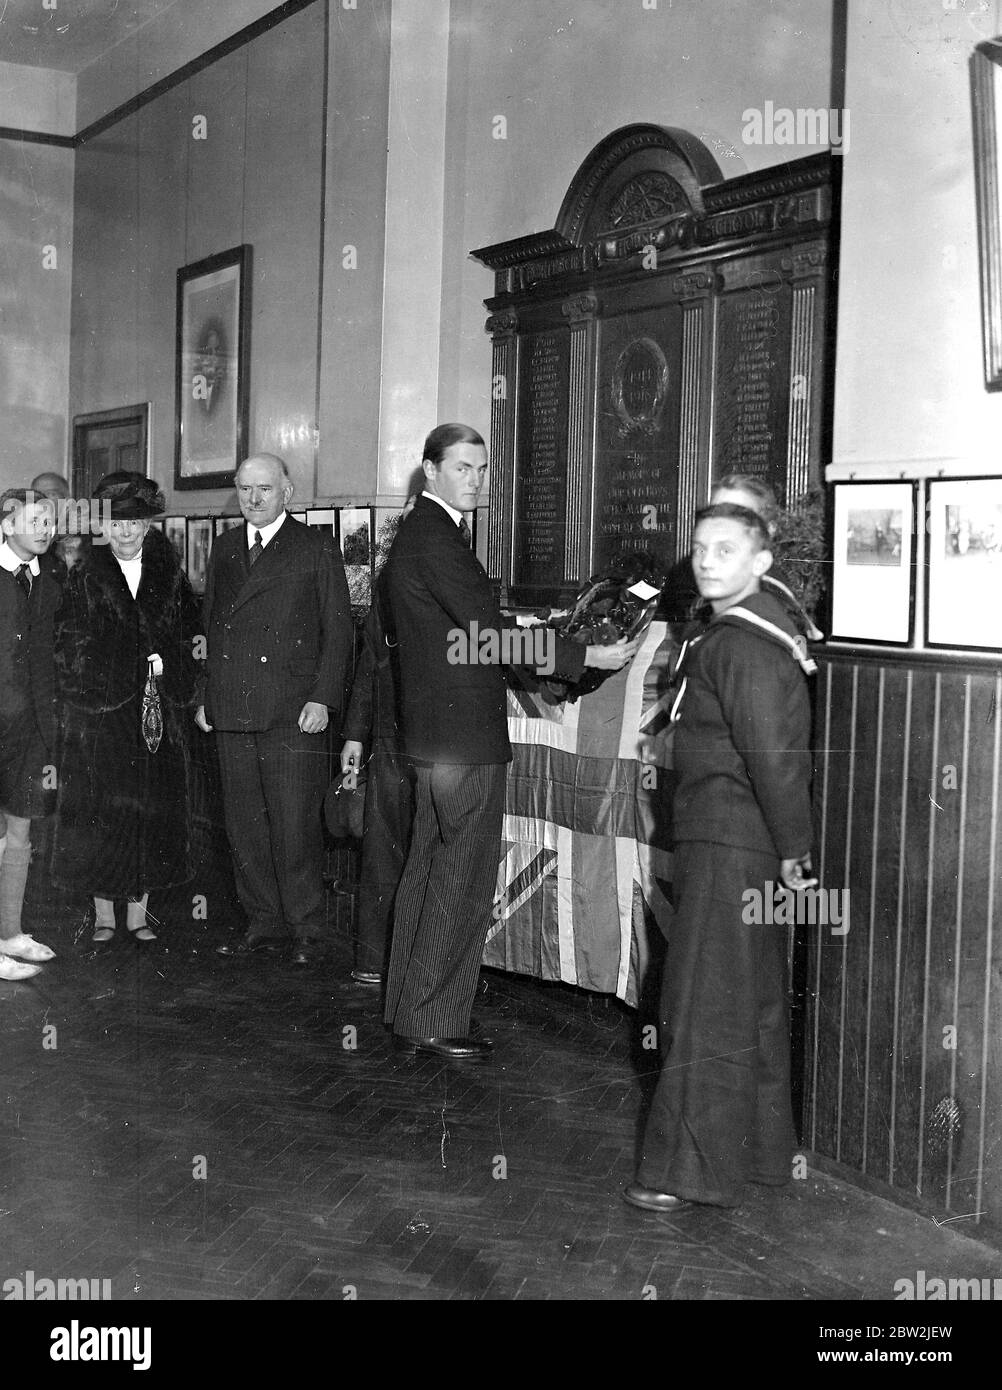 Der Earl of Jersey (George Francis Child Villiers, 9. Earl of Jersey) legt bei seinem Besuch der Fortescue House School, Twickenham (Arethusa and Shaftesbury Society), einen Flandern-Mohn auf das Schulkriegserdenkmal. November 1934 Stockfoto